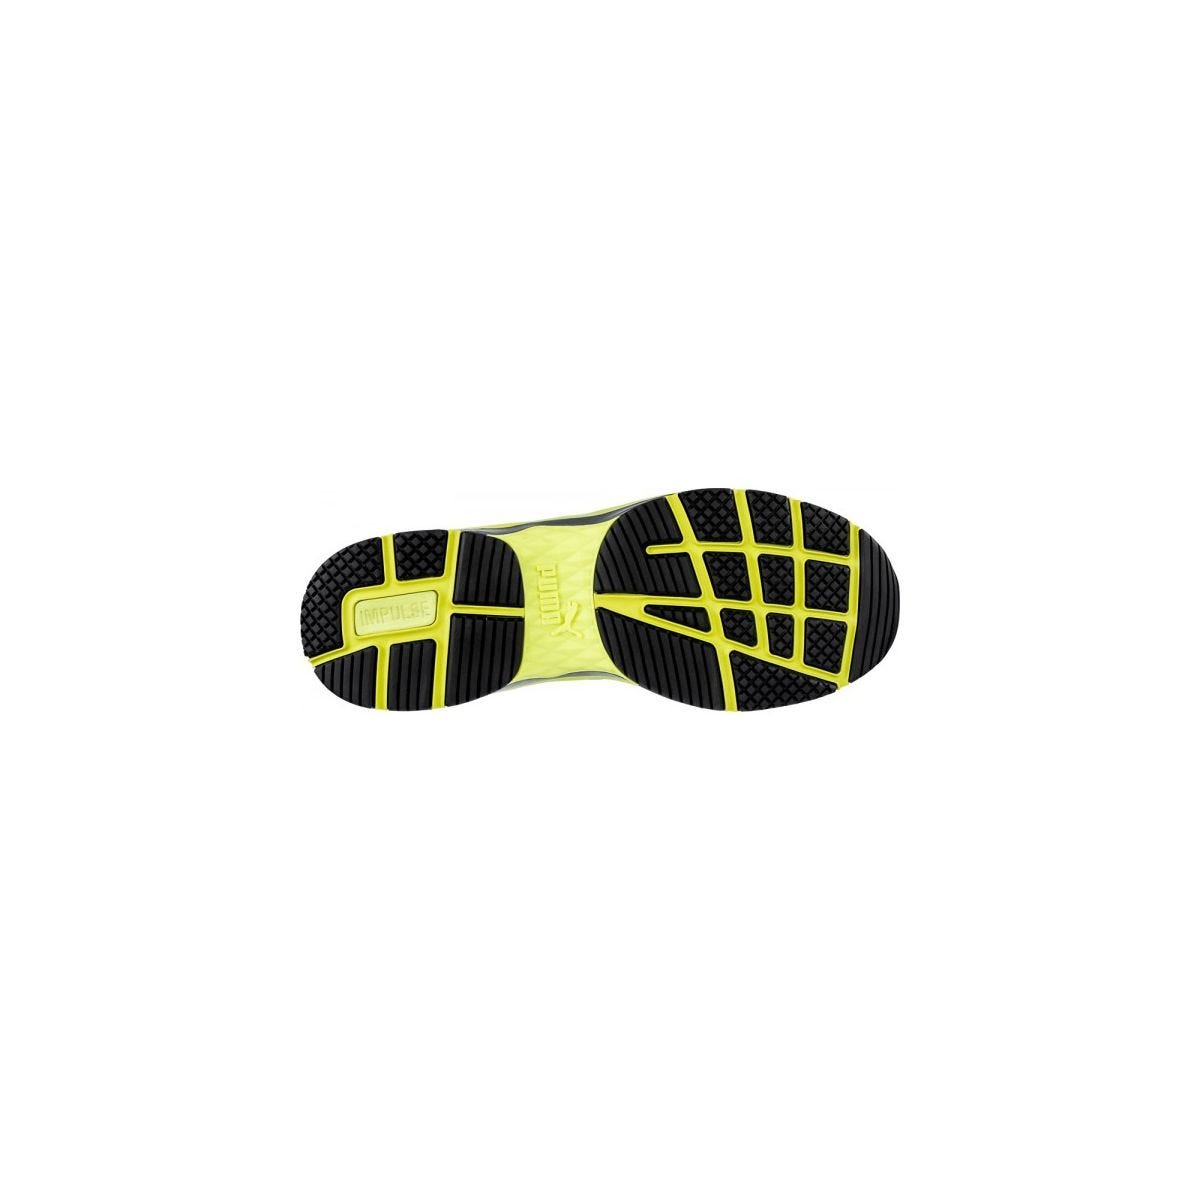 Chaussures de sécurité Velocity 2.0 YELLOW MID S3 - Puma - Taille 47 4